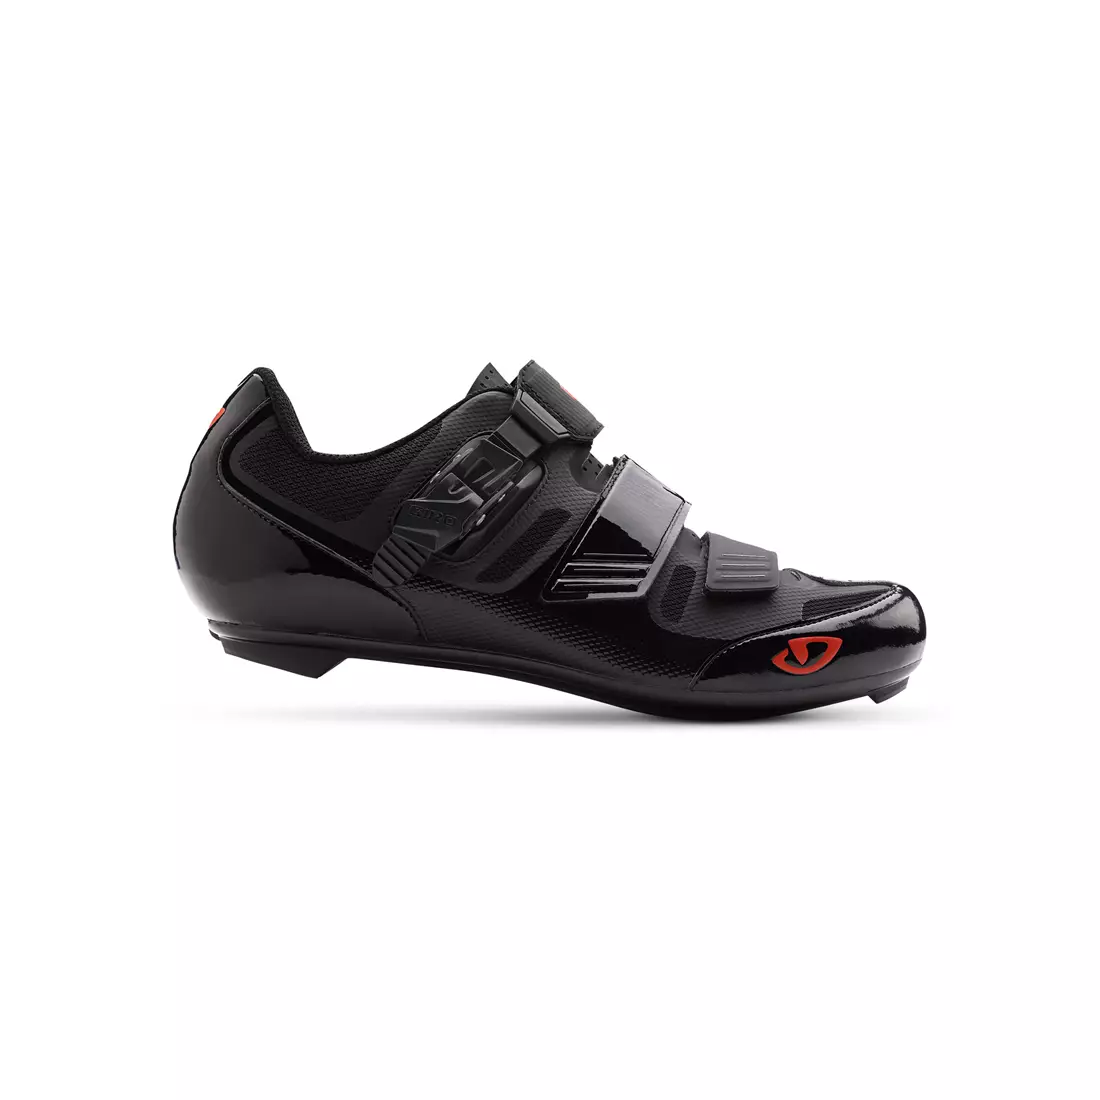 Pánská cyklistická obuv GIRO APECKX II HV+ black bright red 